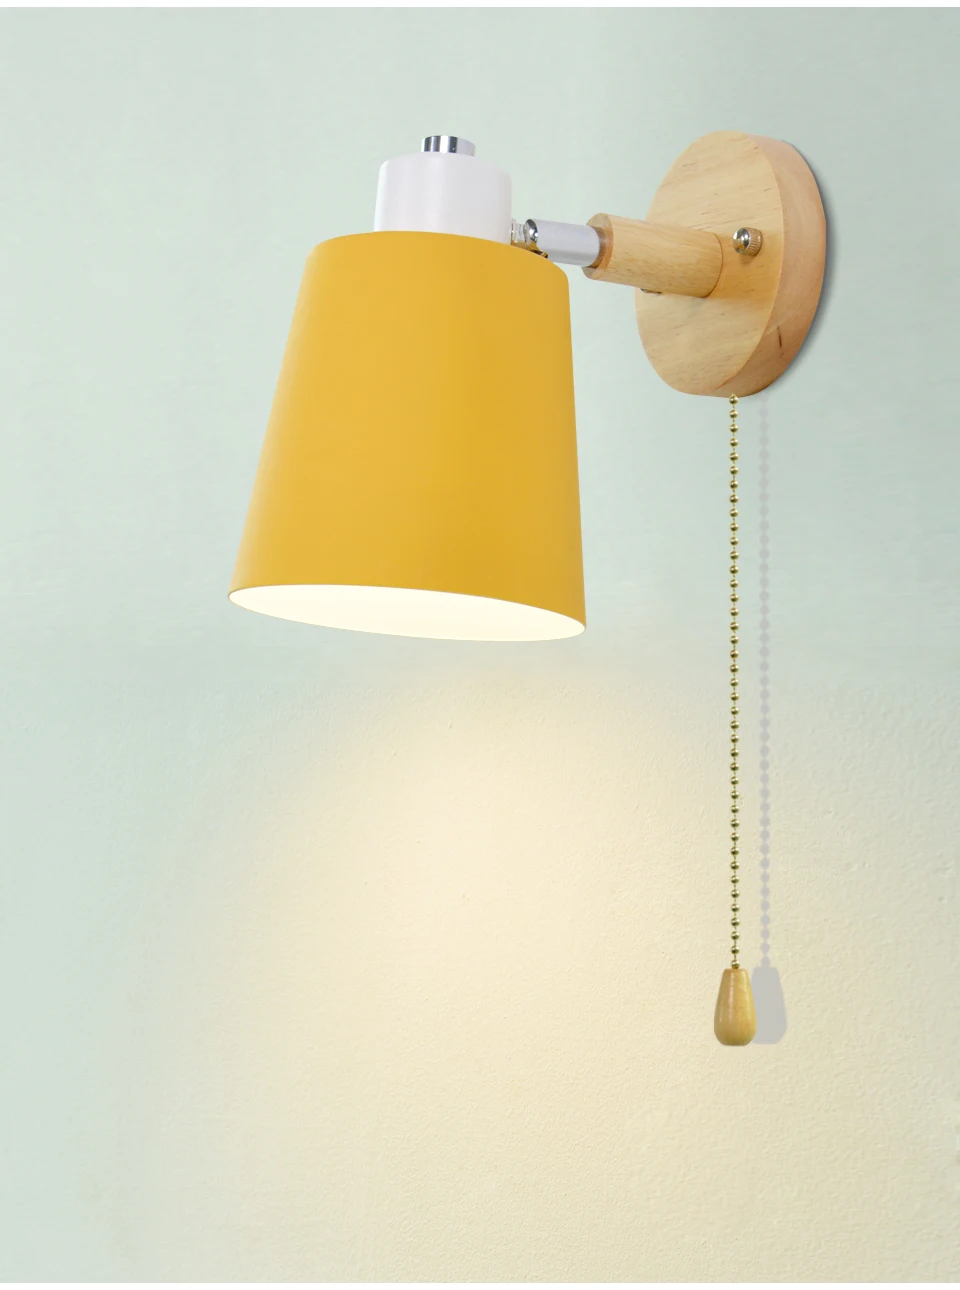 Современный деревянный настенный светильник s прикроватный настенный светильник E27 с выключателем на молнии бра скандинавский настенный светильник для спальни 5 цветов 85-285 в